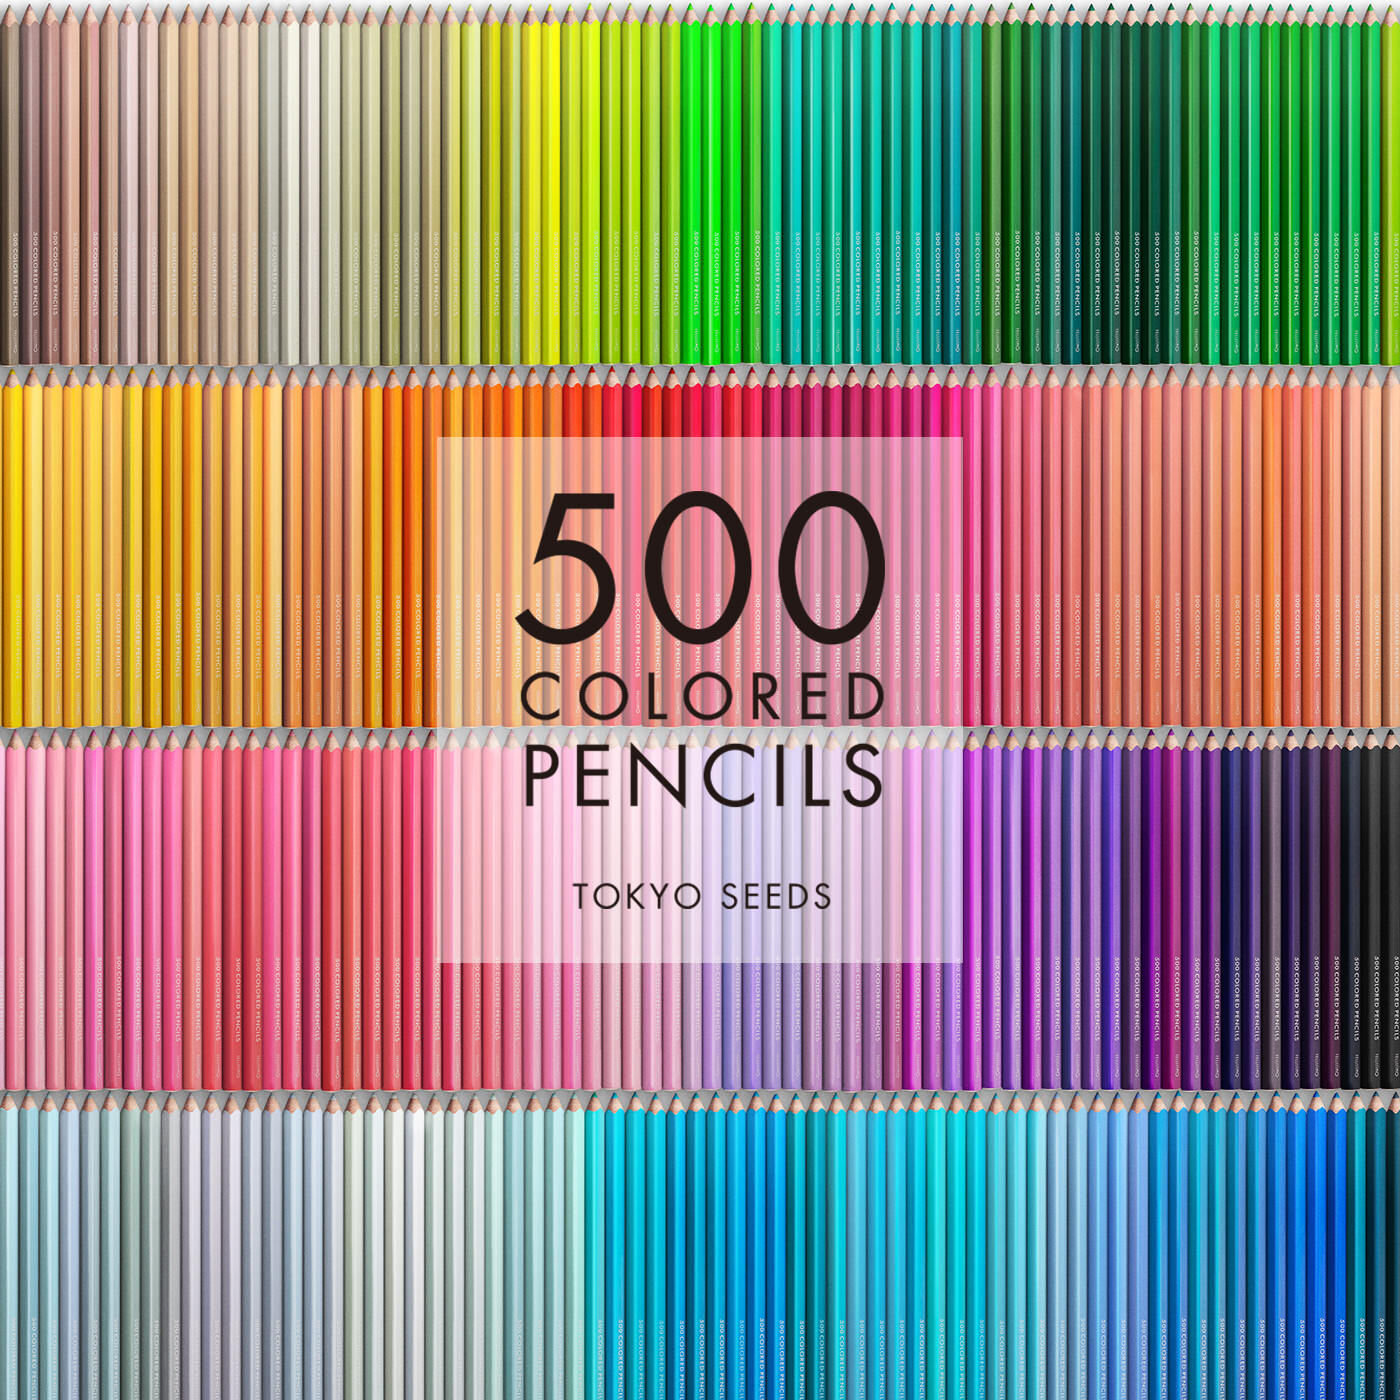 Real Stock|【179/500 DANISH DELICIOUS】500色の色えんぴつ TOKYO SEEDS|1992年、世界初の「500色」という膨大な色数の色えんぴつが誕生して以来、その販売数は発売当初から合わせると、世界55ヵ国10万セット以上。今回、メイド・イン・ジャパンにこだわり、すべてが新しく生まれ変わって登場しました。